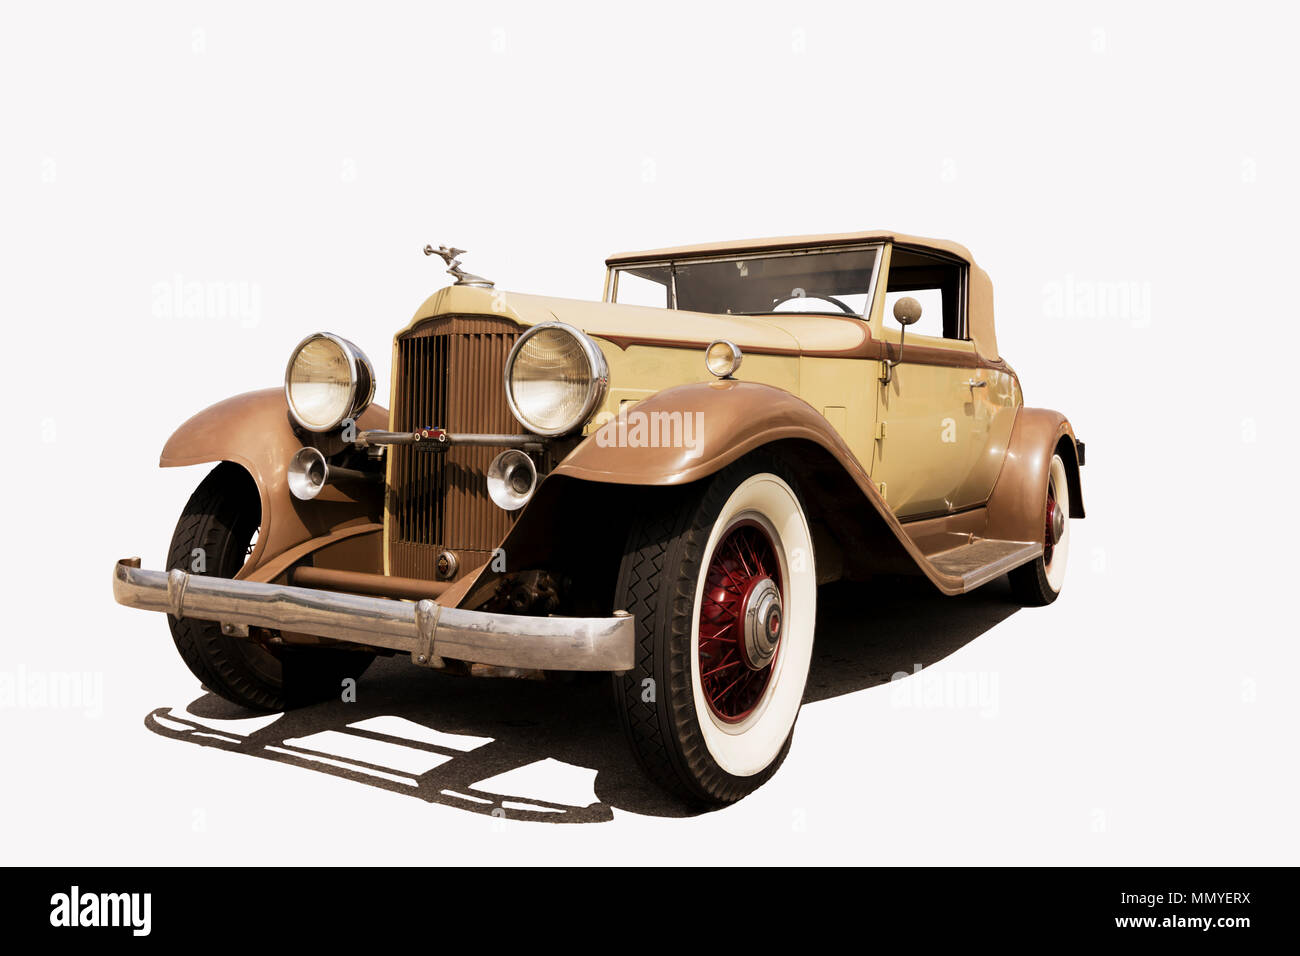 Photo d'une automobile anciens restaurés isolé et placé sur un fond blanc. Ombre est l'ombre de la voiture. Banque D'Images